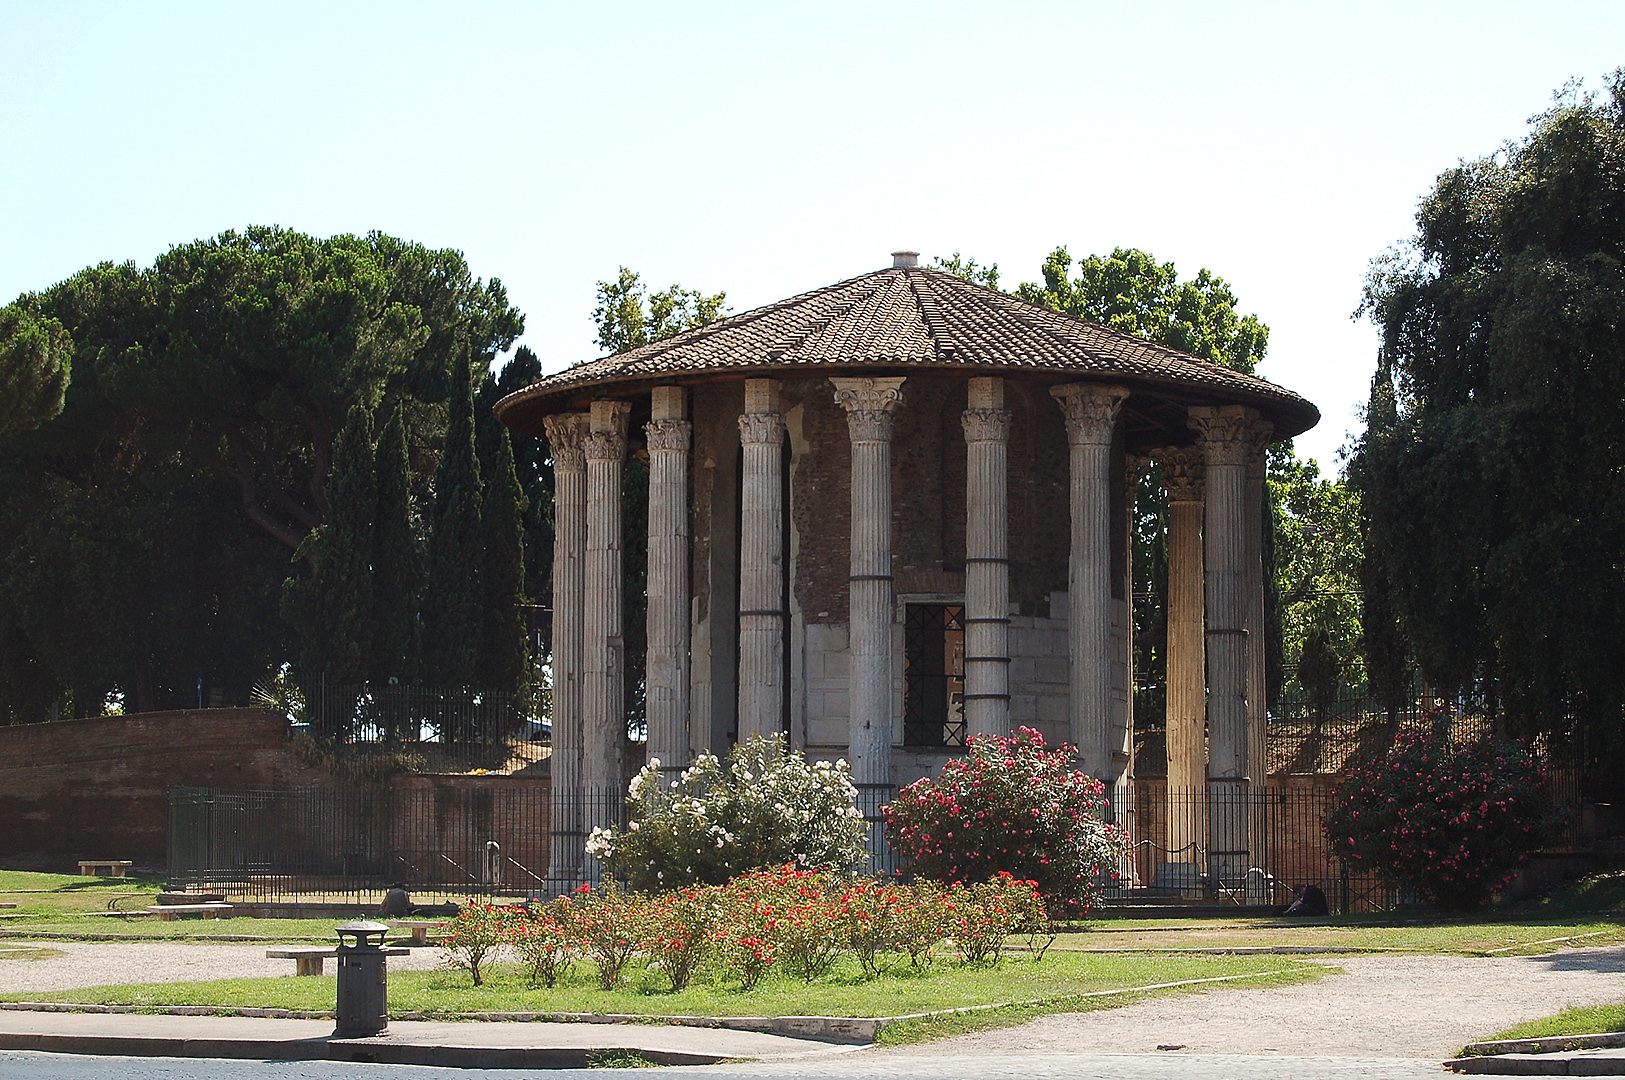 Tempel van Hercules Invictus, Rome, Itali, Temple of Hercules Victor, Rome, Italy.